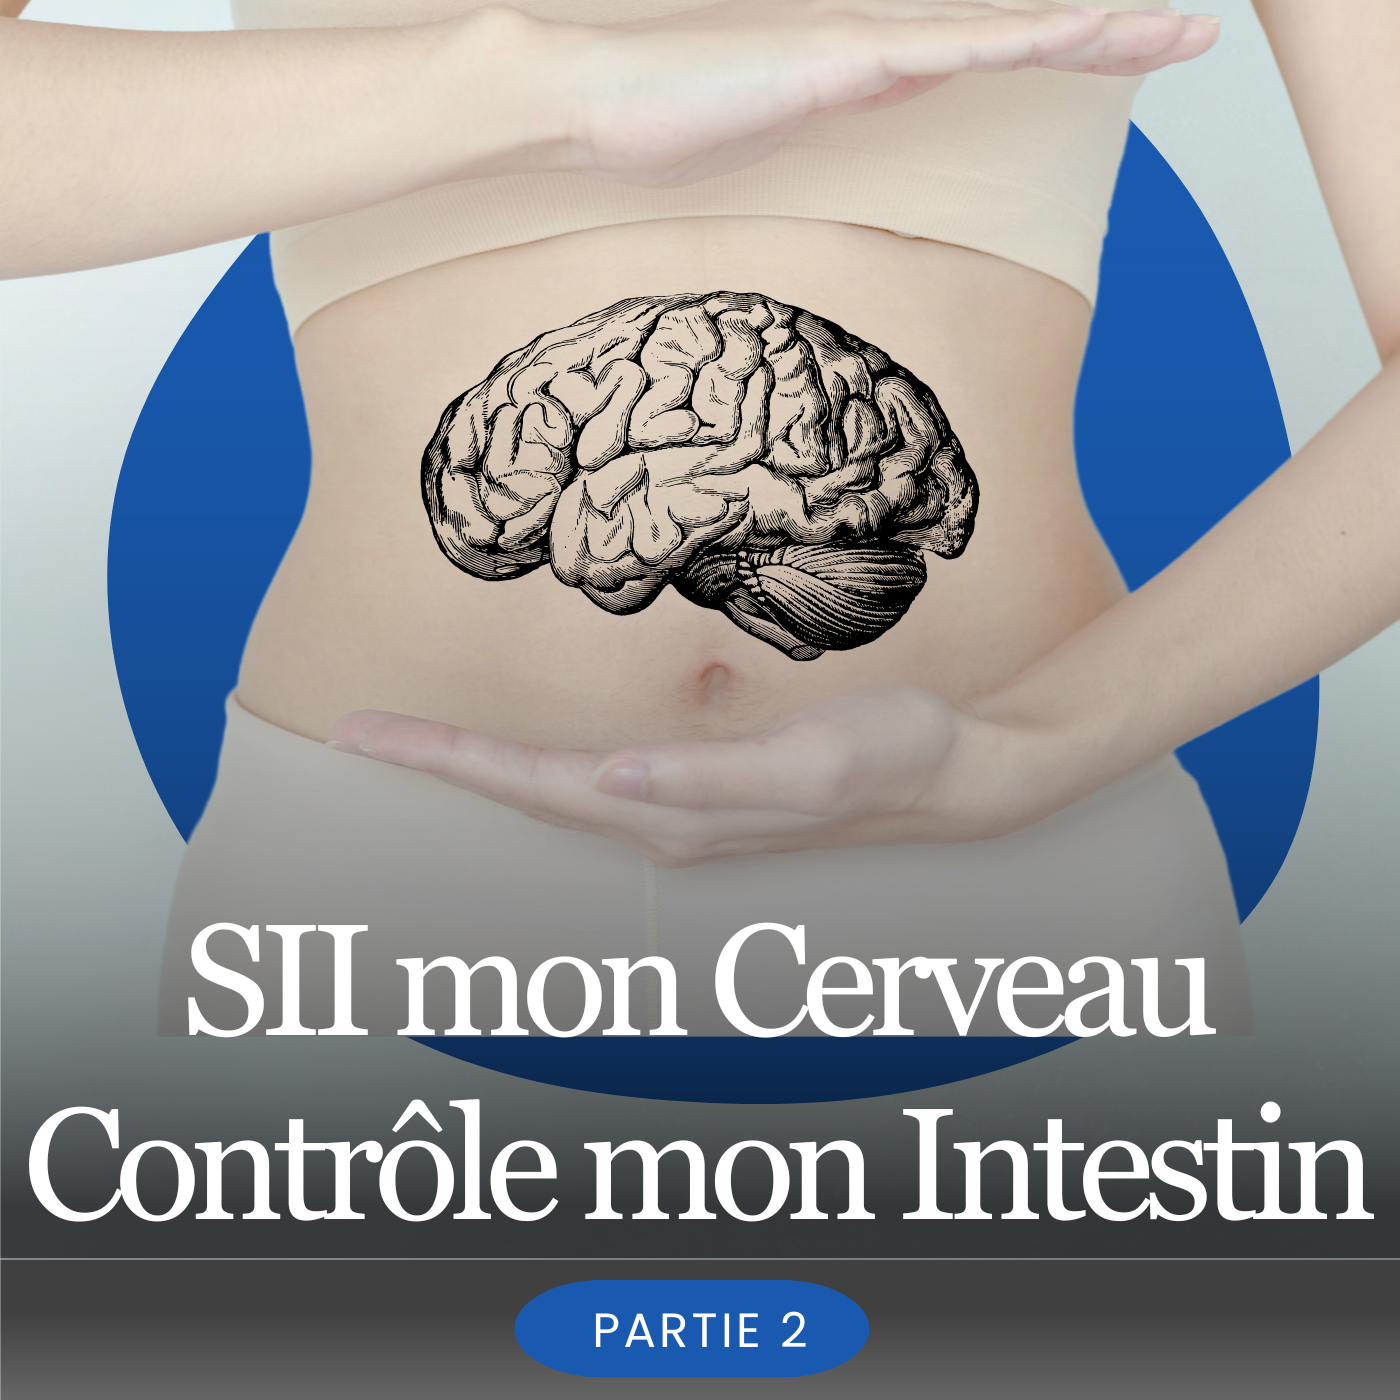 Gérer le Syndrôme de l'Intestin Irritable: mon cerveau va contrôler mes intestins (partie 2)